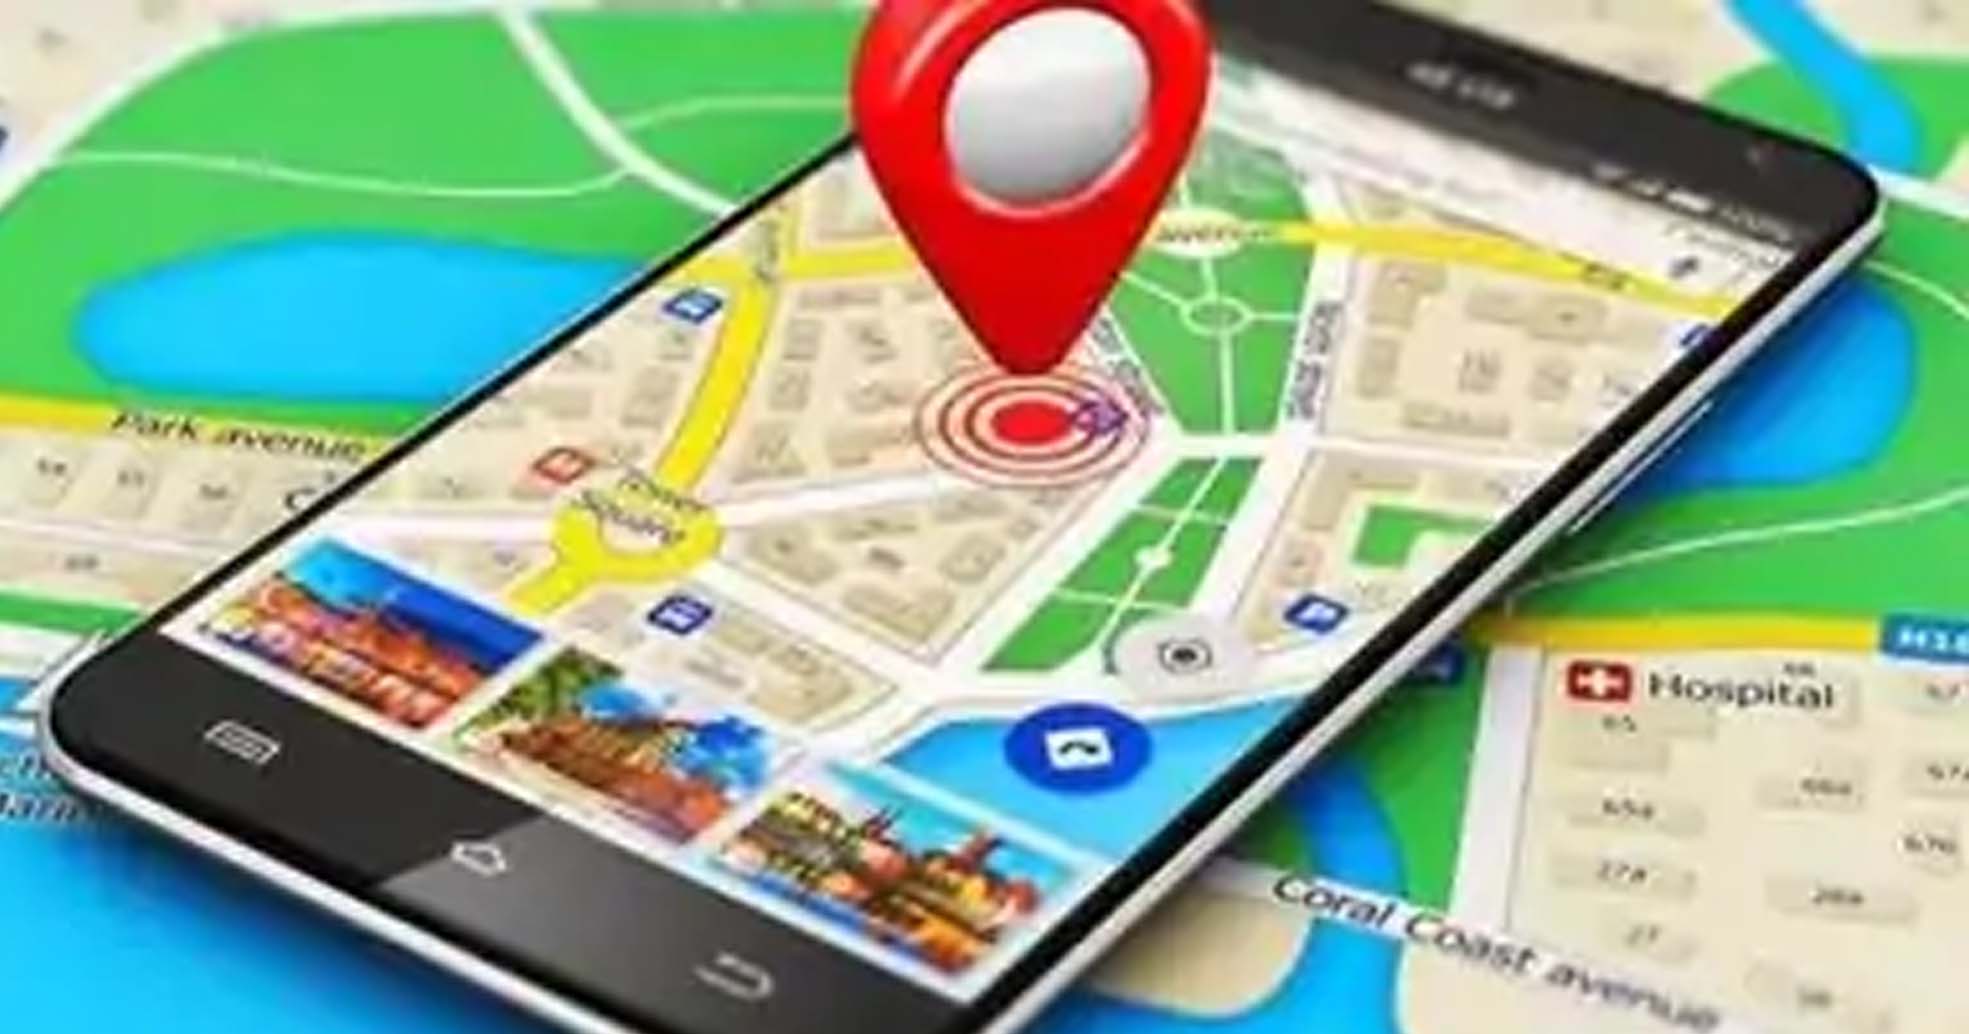 गूगल मैप्स में शामिल होगा नया फीचर अब गुमनाम सड़कों की जानकारी दे सकेंगे आप